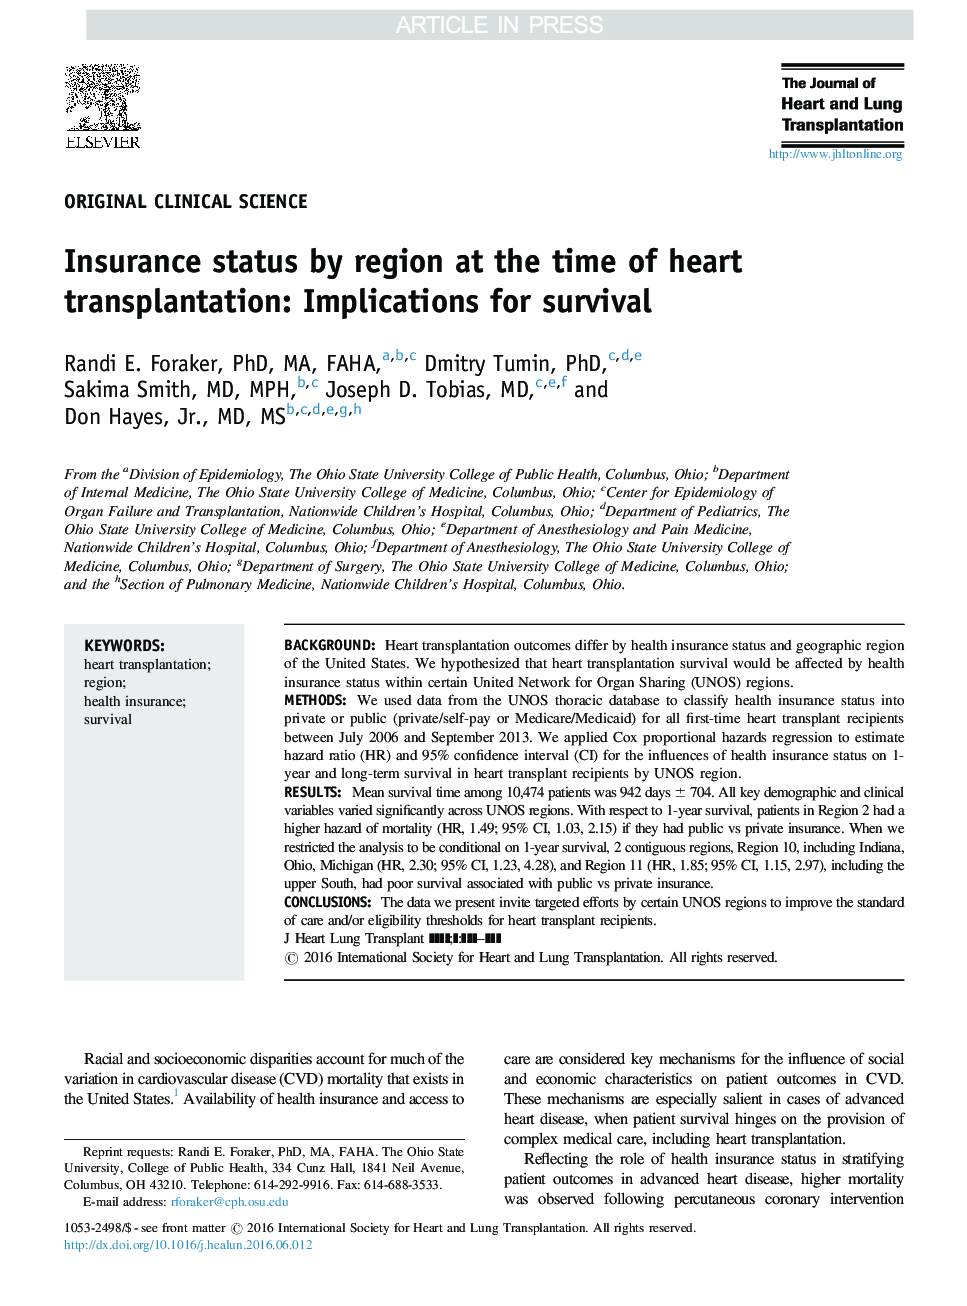 وضعیت بیمه در منطقه در زمان پیوند قلب: پیامدهای بقا 